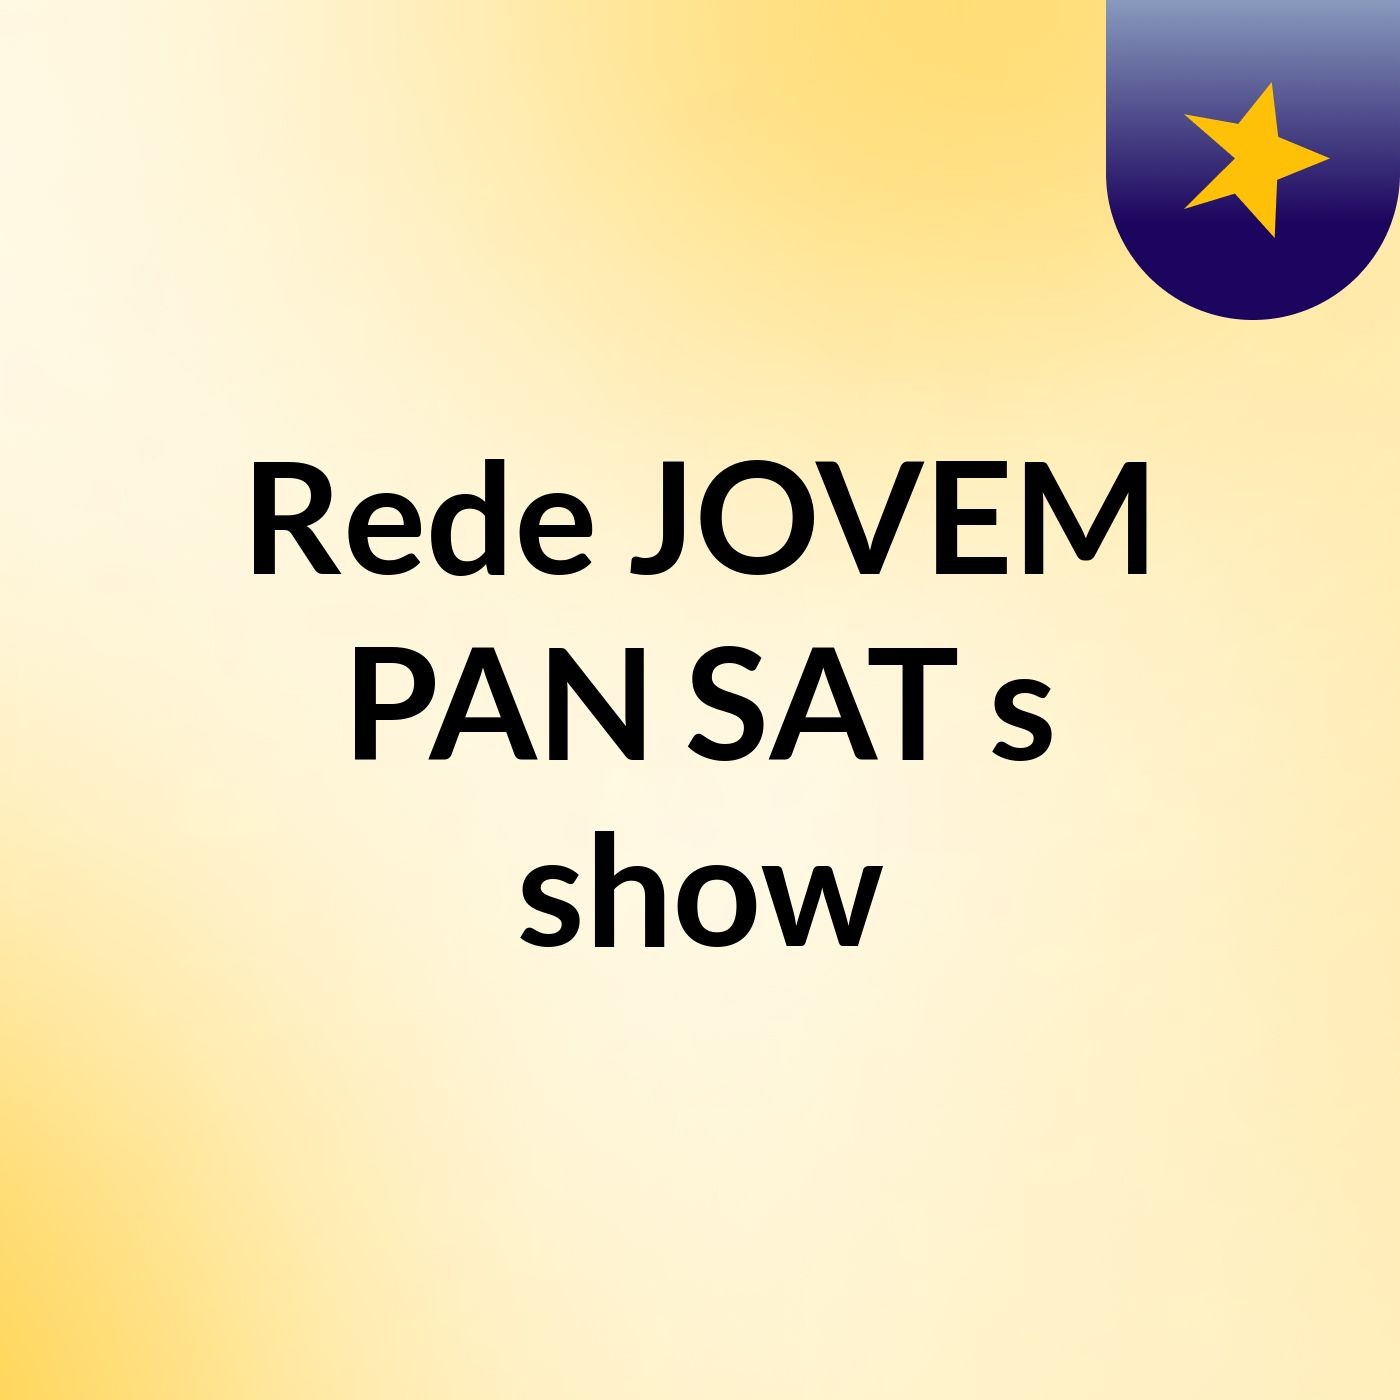 Rede JOVEM PAN SAT's show